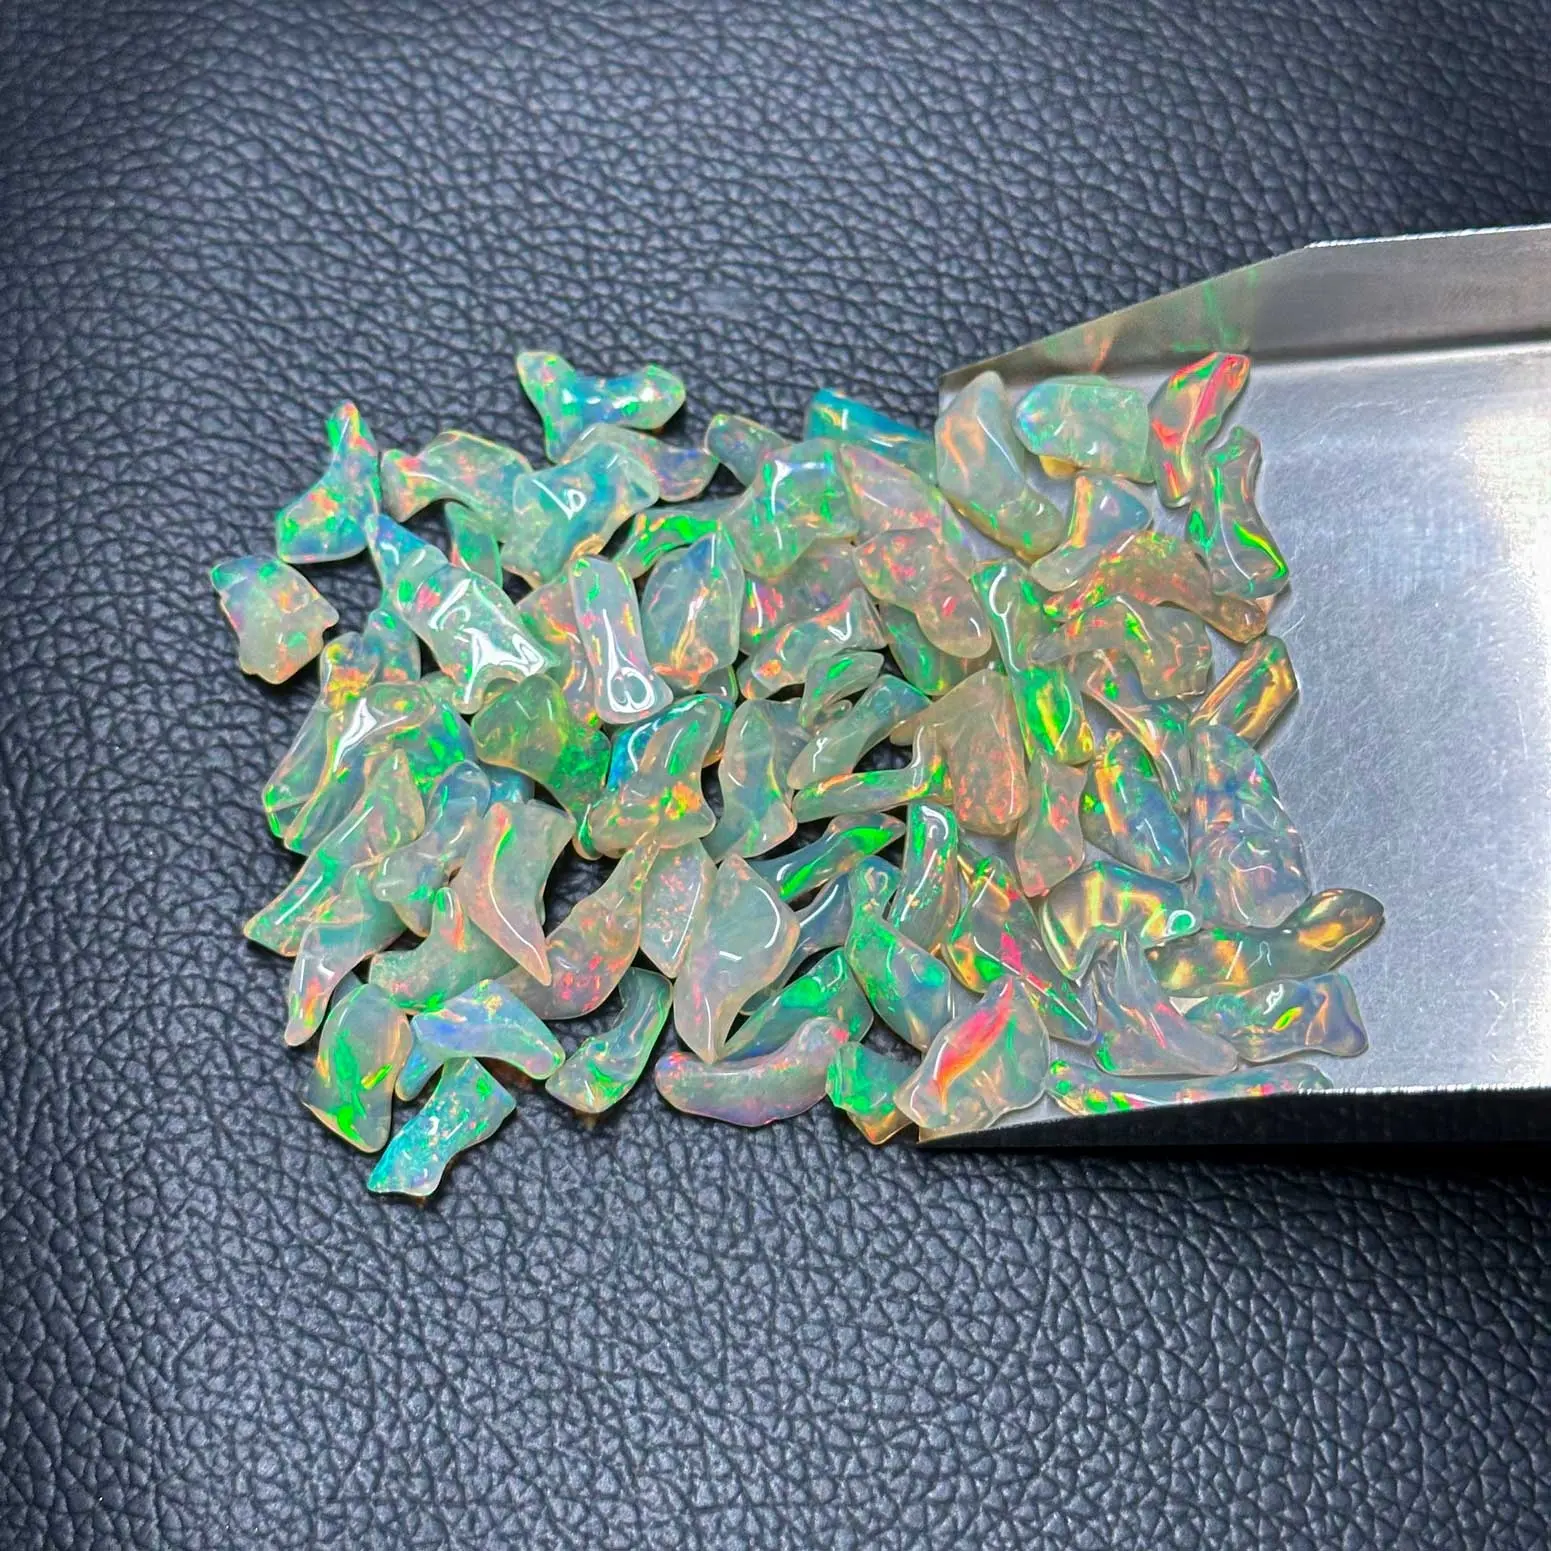 Aaa chất lượng tự nhiên đánh bóng Opal thô ethiopian opals nguyên Stones Đối với trang sức đá quý hạt giá bán buôn